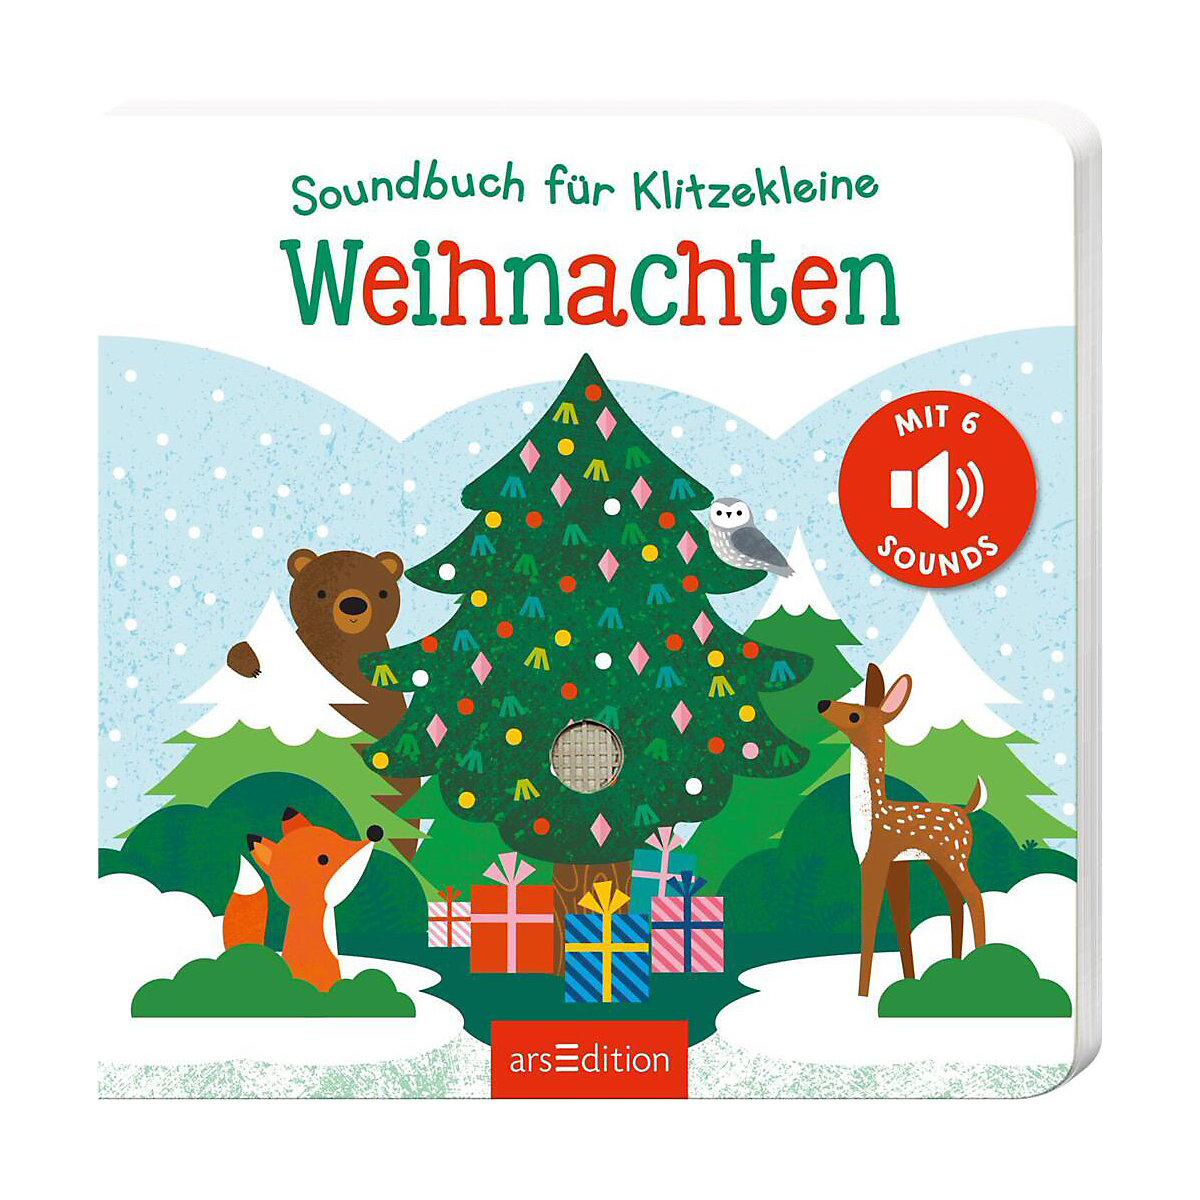 arsEdition Verlag Soundbuch für Klitzekleine Weihnachten